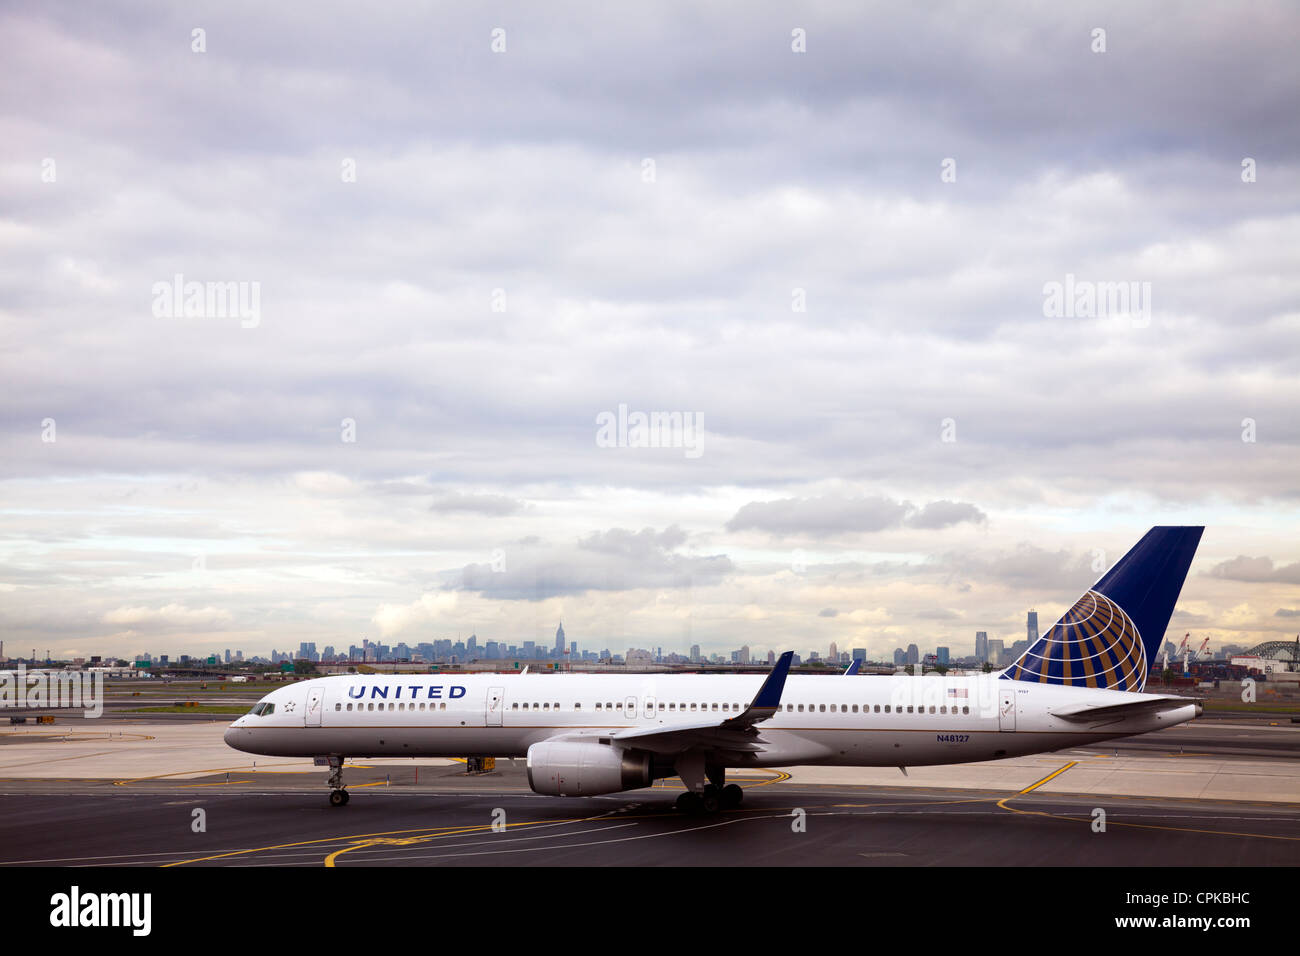 United Airlines Flugzeug auf Asphalt mit Manhattan Skyline im Hintergrund New York City Newark Airport, United Airlines, United Airlines Flug-, United Stockfoto